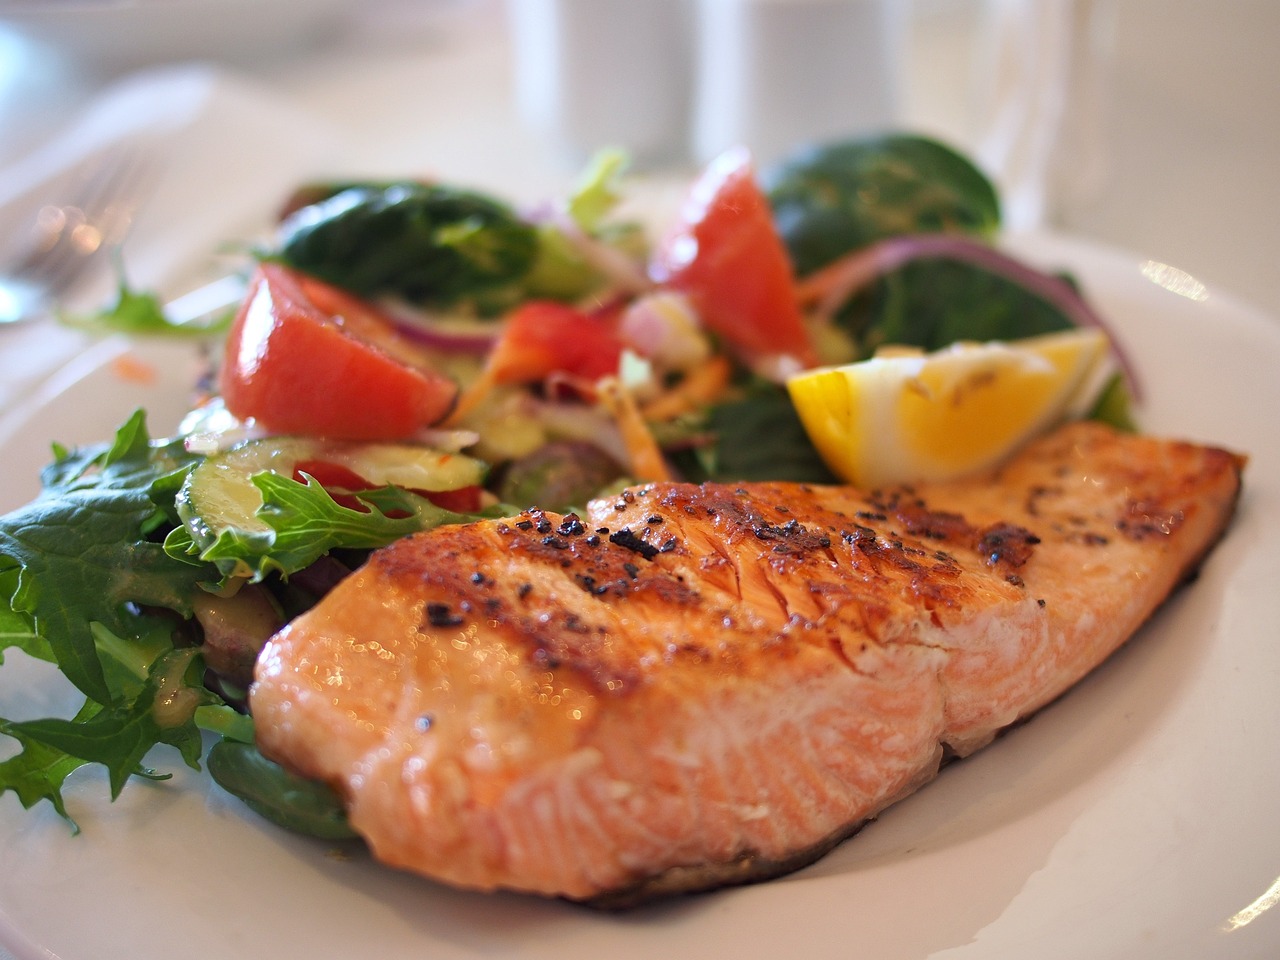 Cá hồi không chỉ giàu protein, mà còn chứa chất béo omega-3 thiết yếu có lợi cho não bộ. (Ảnh minh họa: kho ảnh Pixabay)